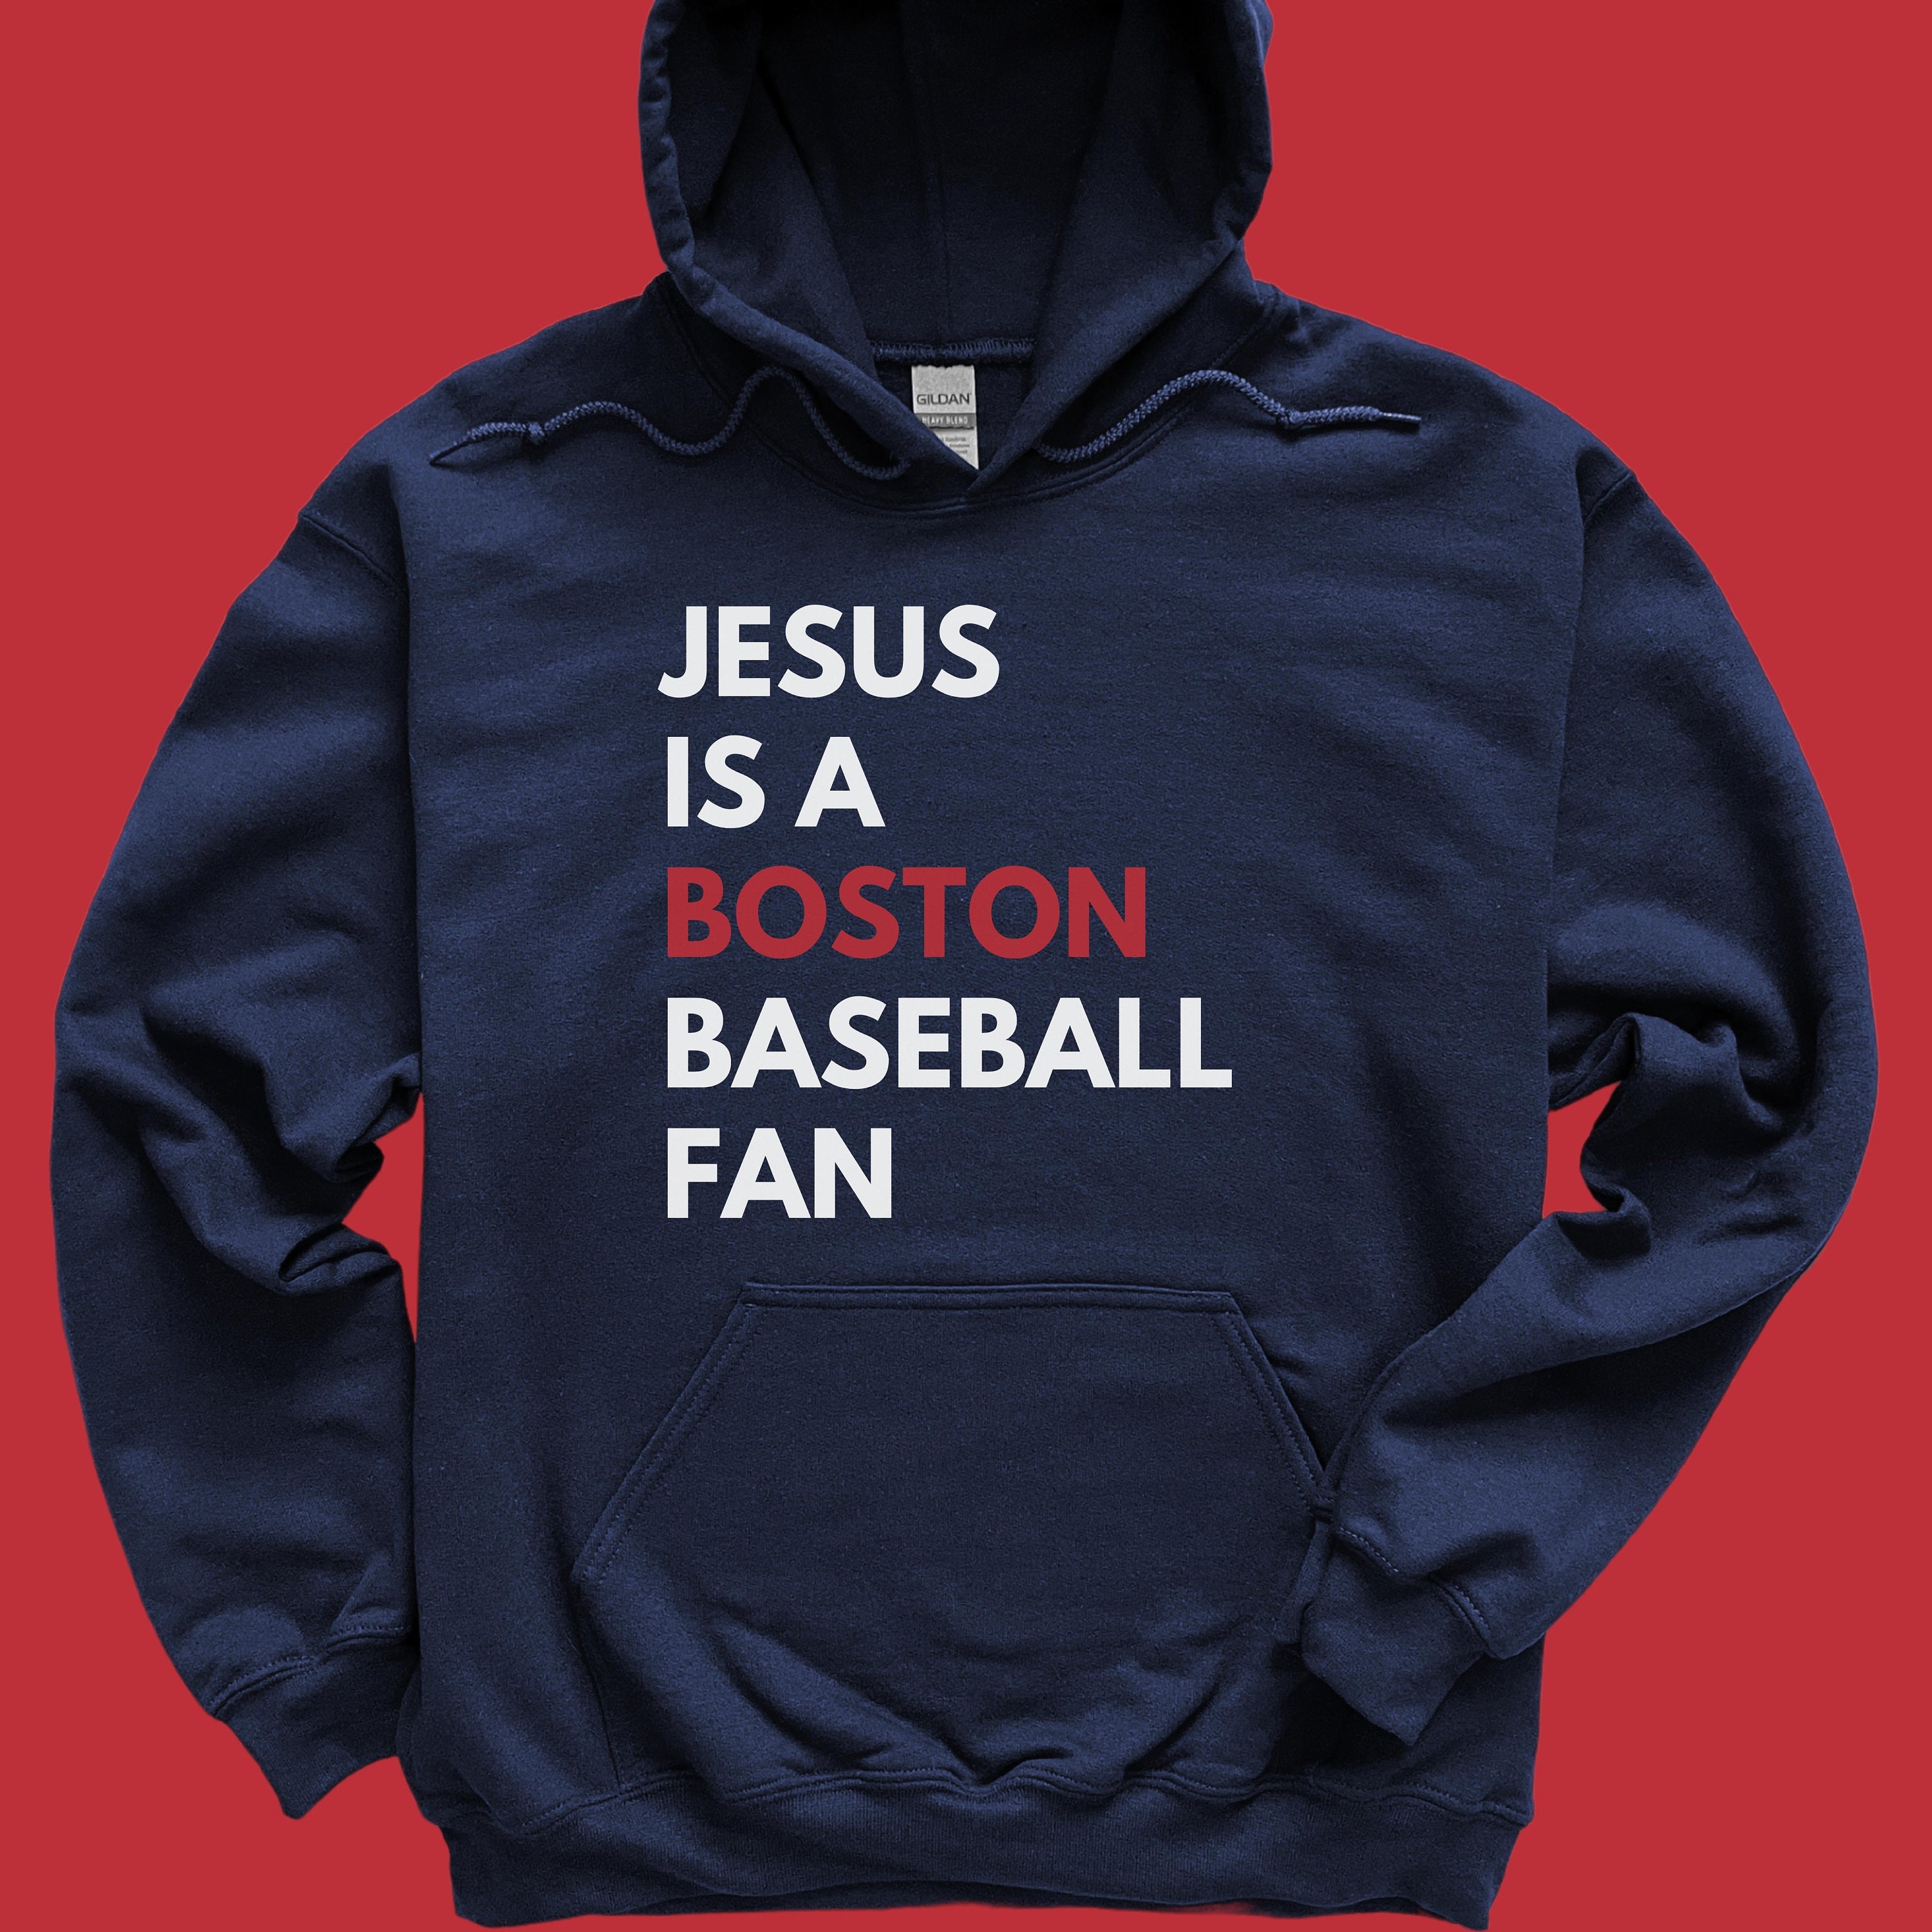 Alex Verdugo retro 90s Boston baseball shirt, hoodie, sweater and